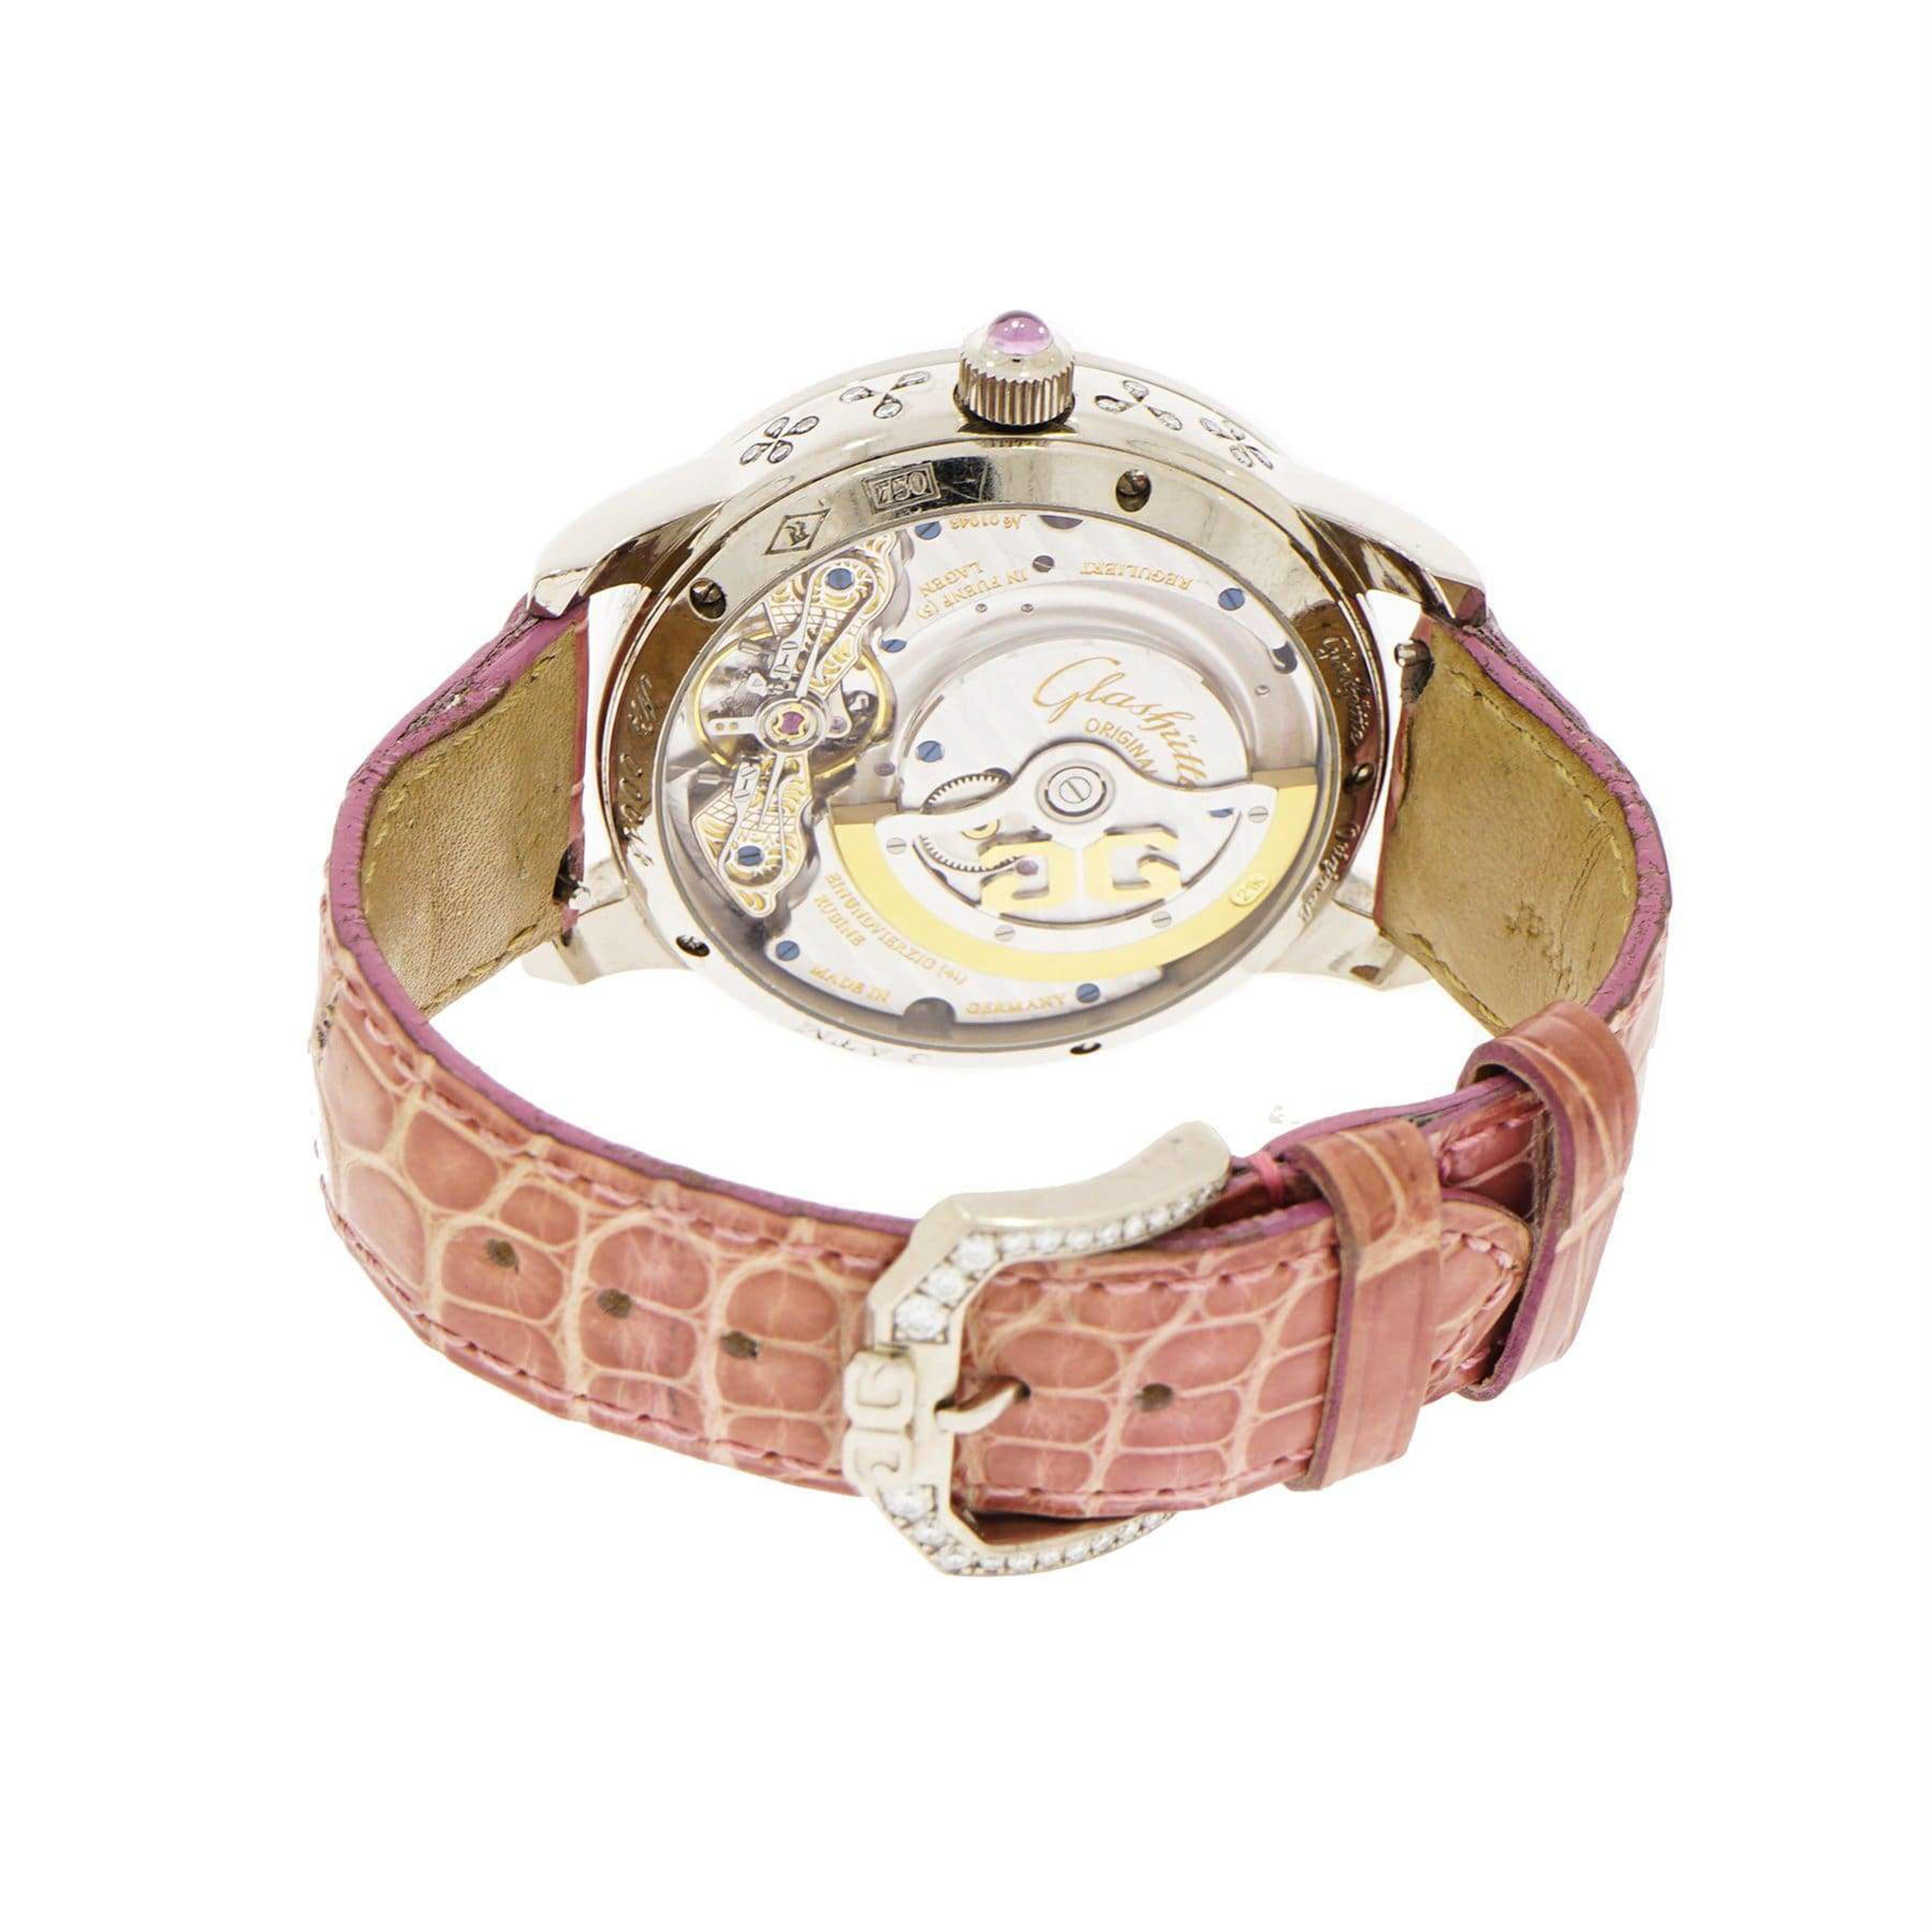 Modern Glashütte Original Panodate White Gold Wristwatch